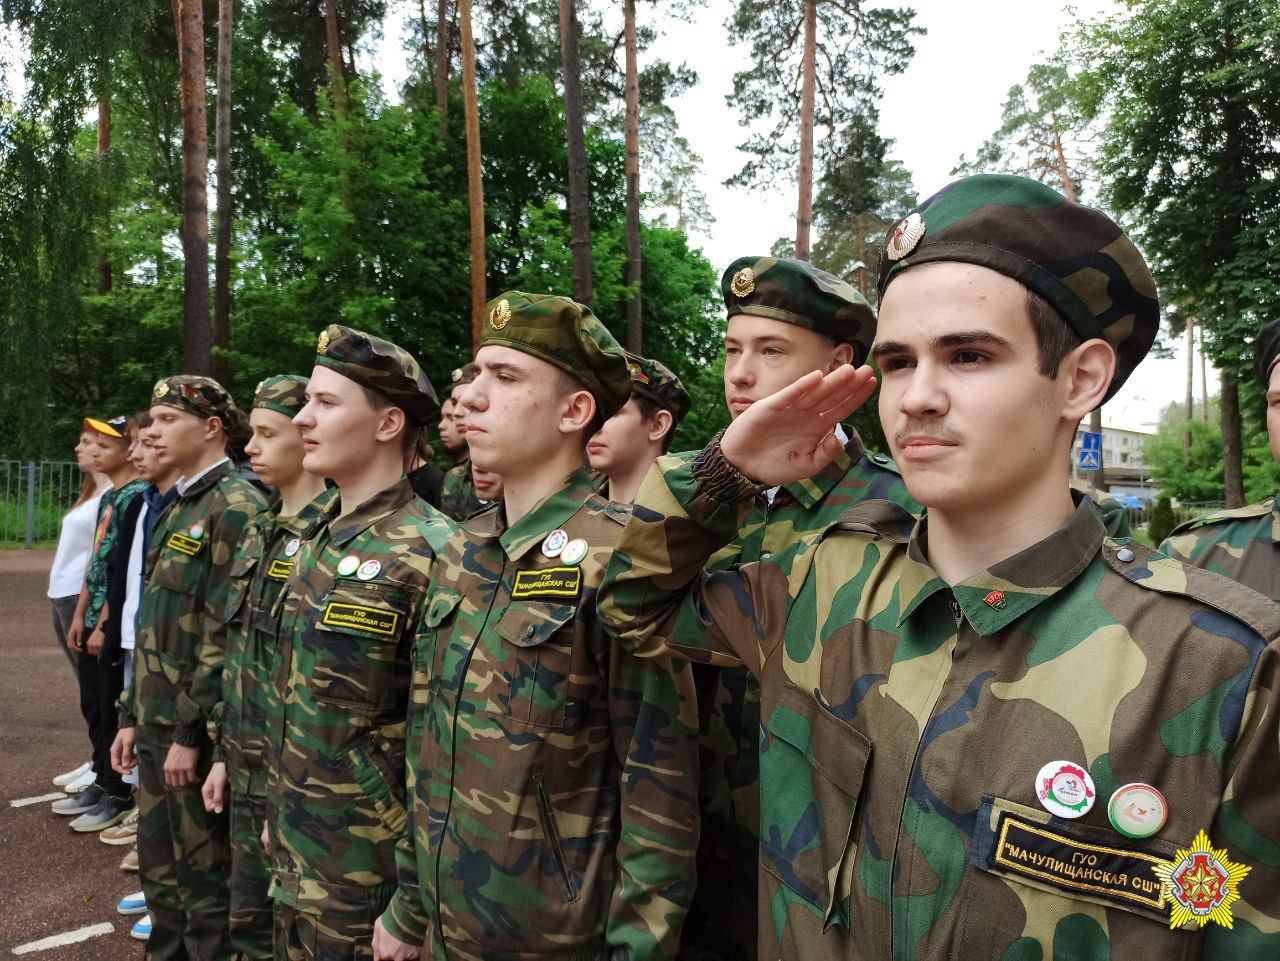 Более 14 тысяч школьников примут в военно-спортивных лагерях за лето